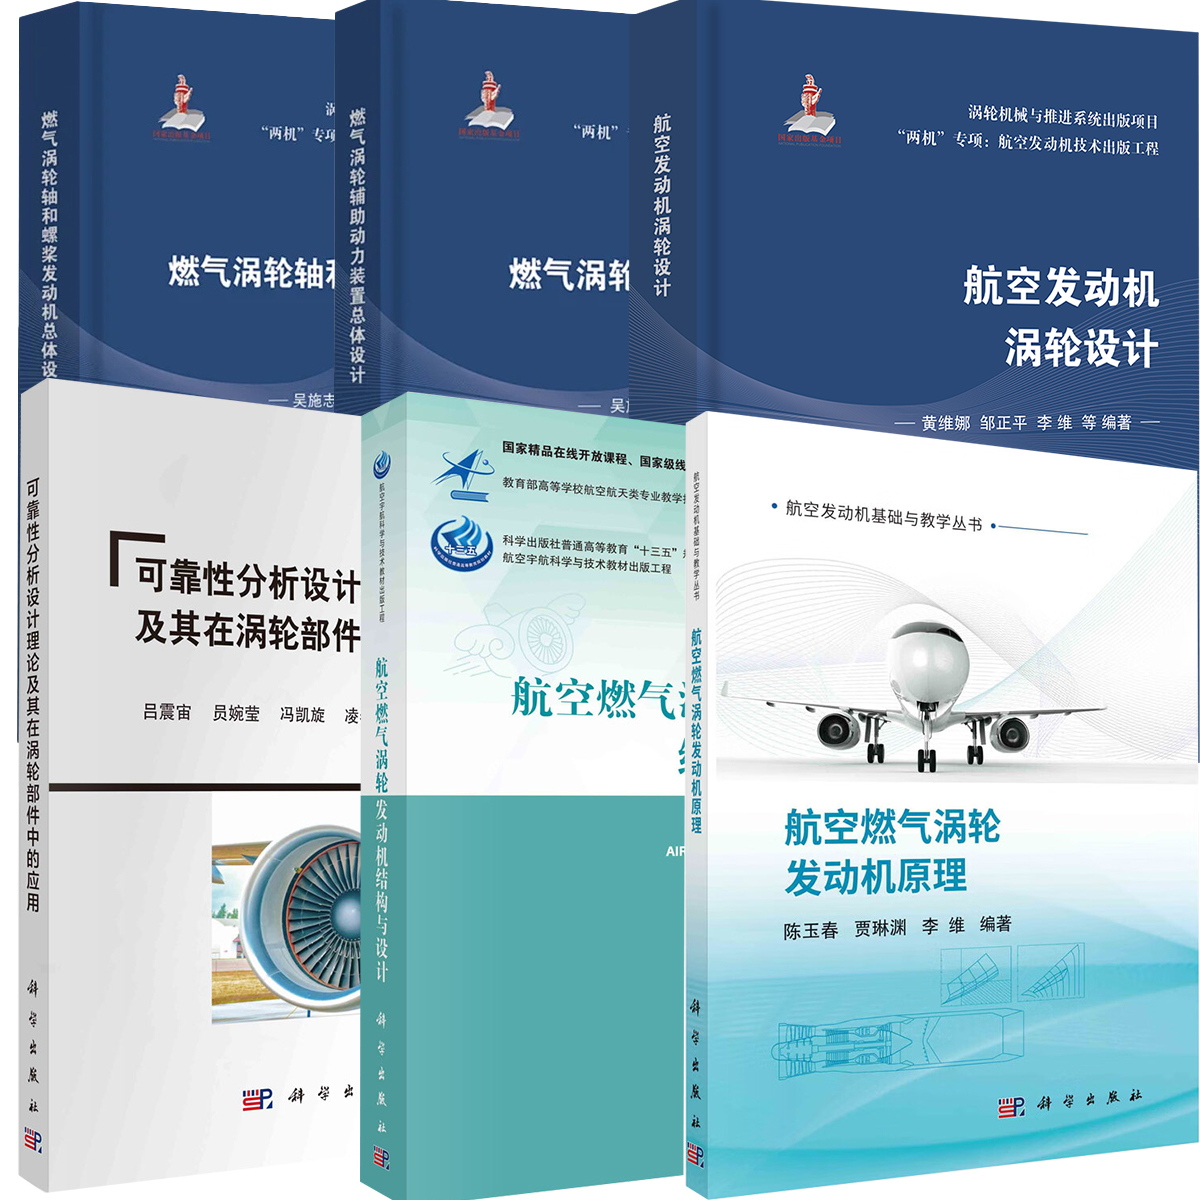 【全6册】航空发动机涡轮设计航空燃气涡轮发动机结构与设计航空燃气涡轮发动机原理+可靠性分析设计理论及其在涡轮部件中的应用